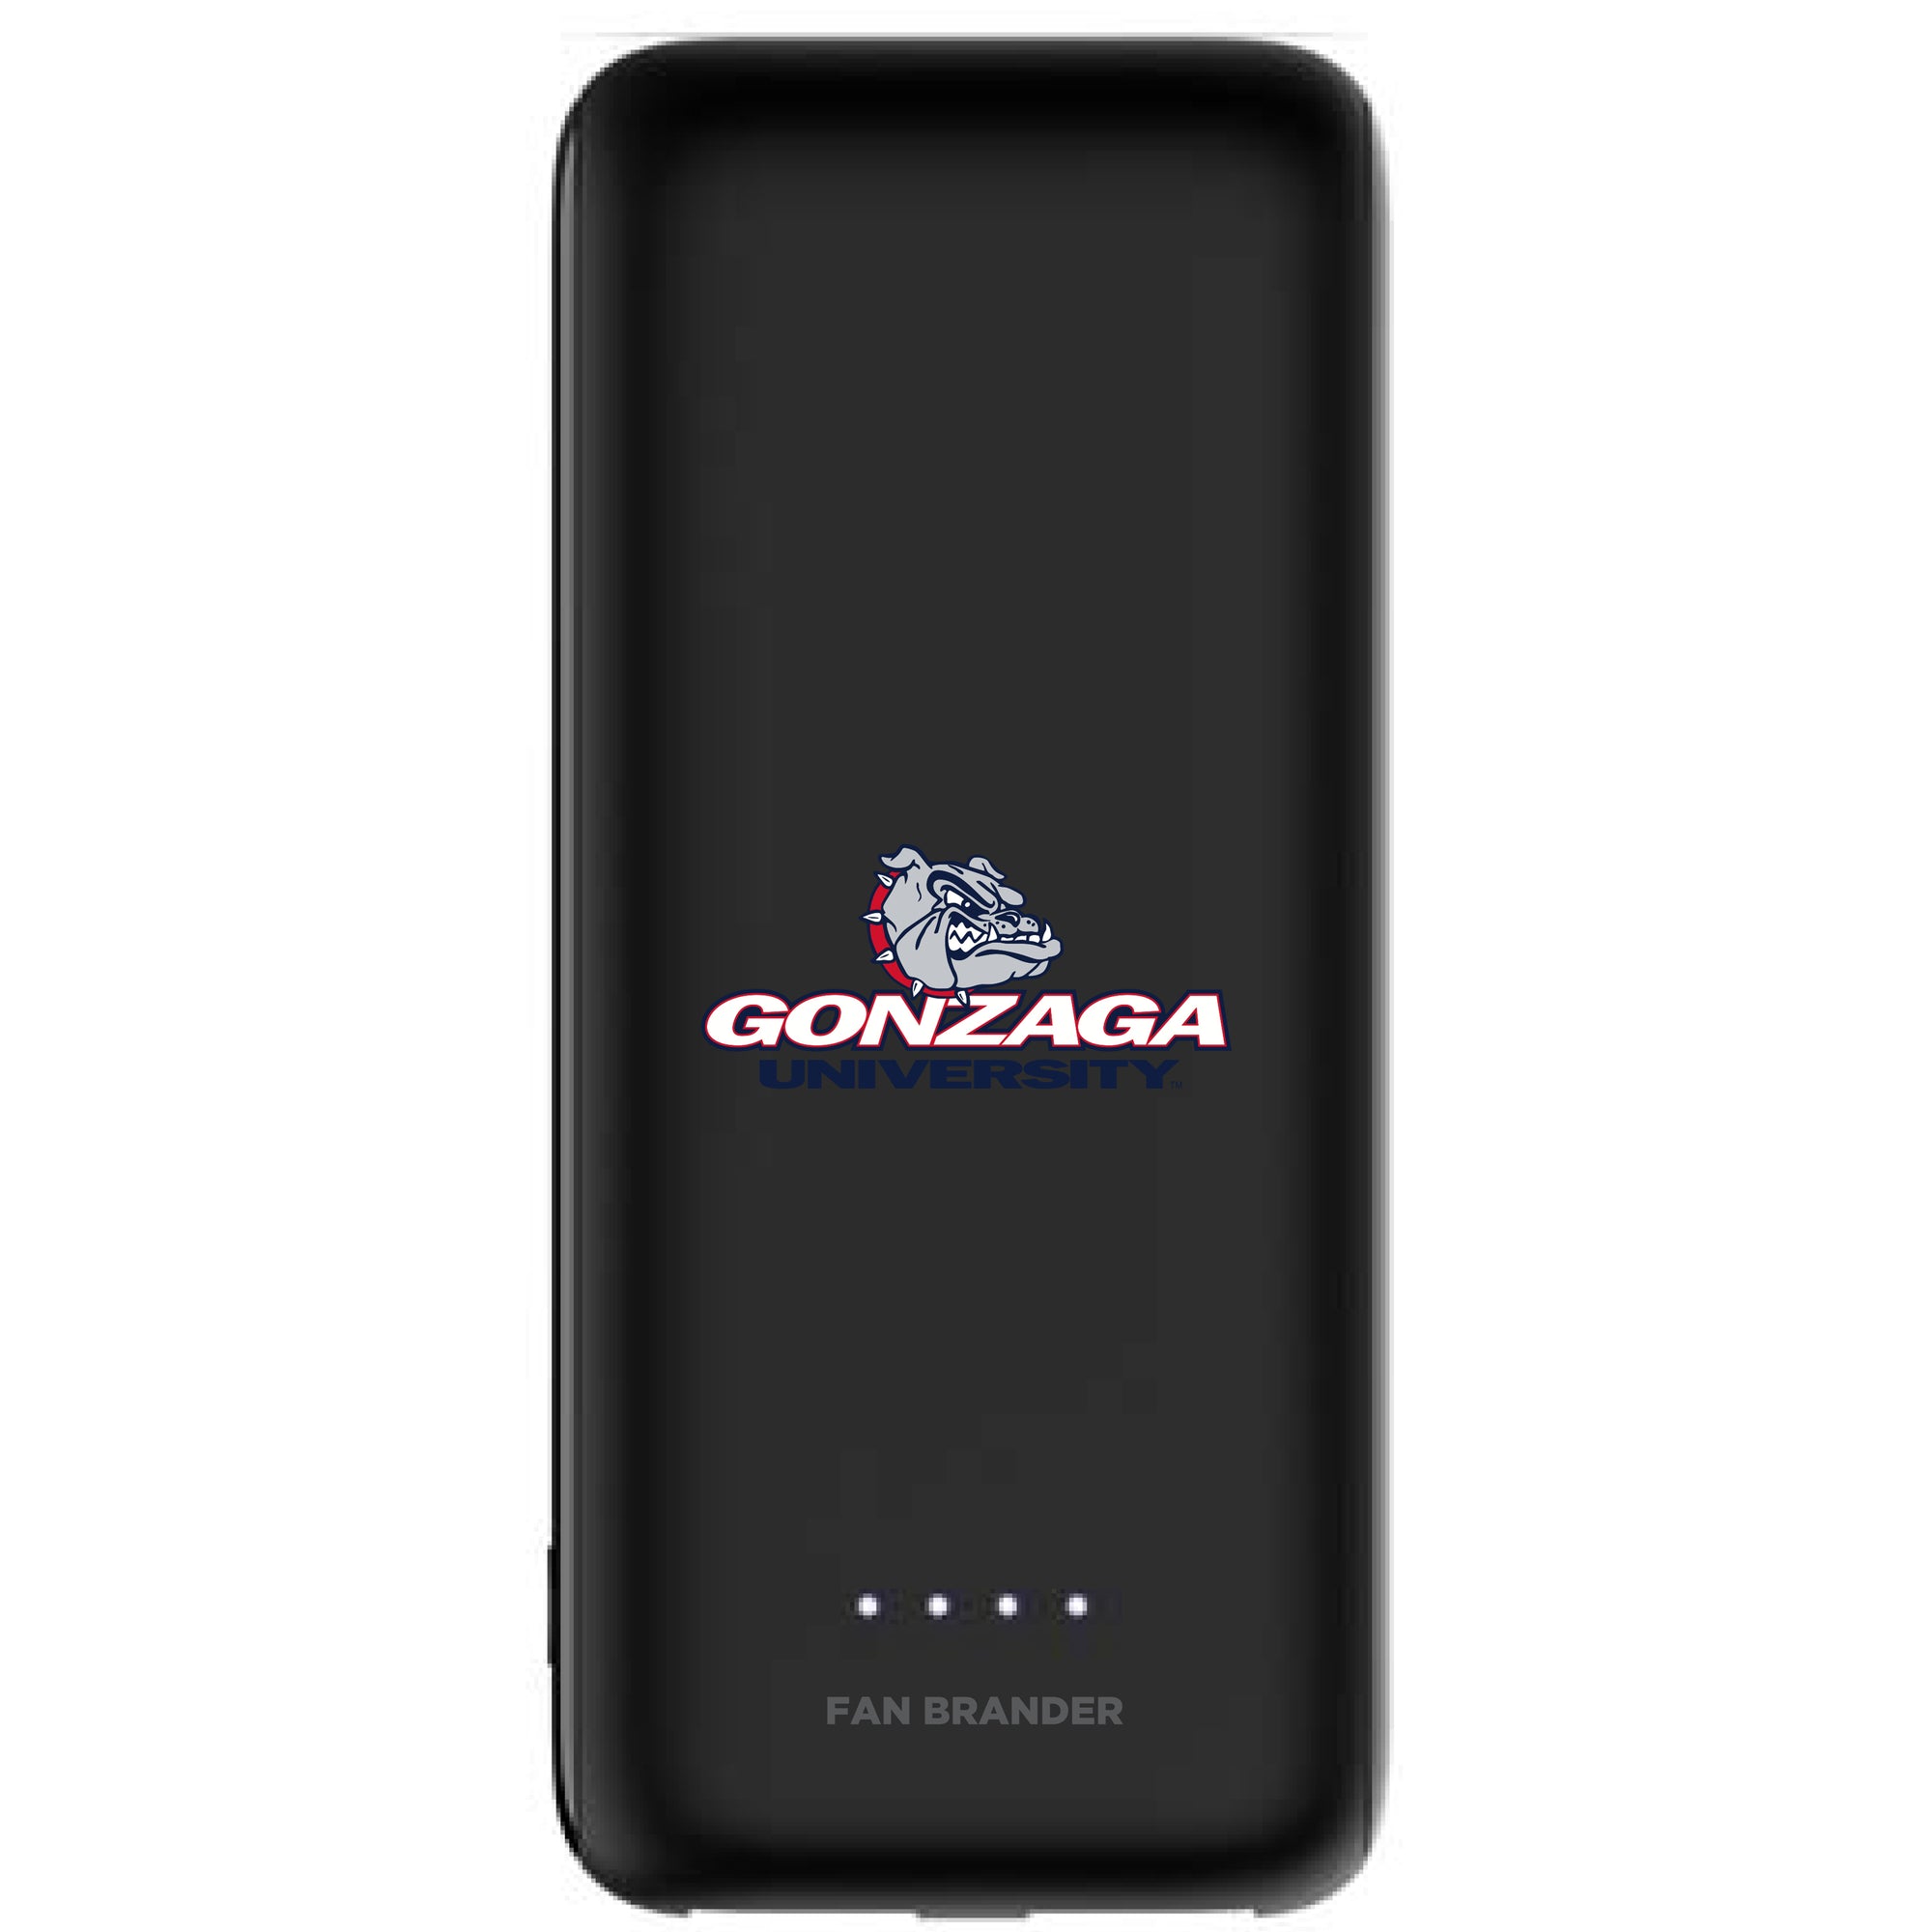 Gonzaga Bulldogs Power Boost Mini 5,200 mAH